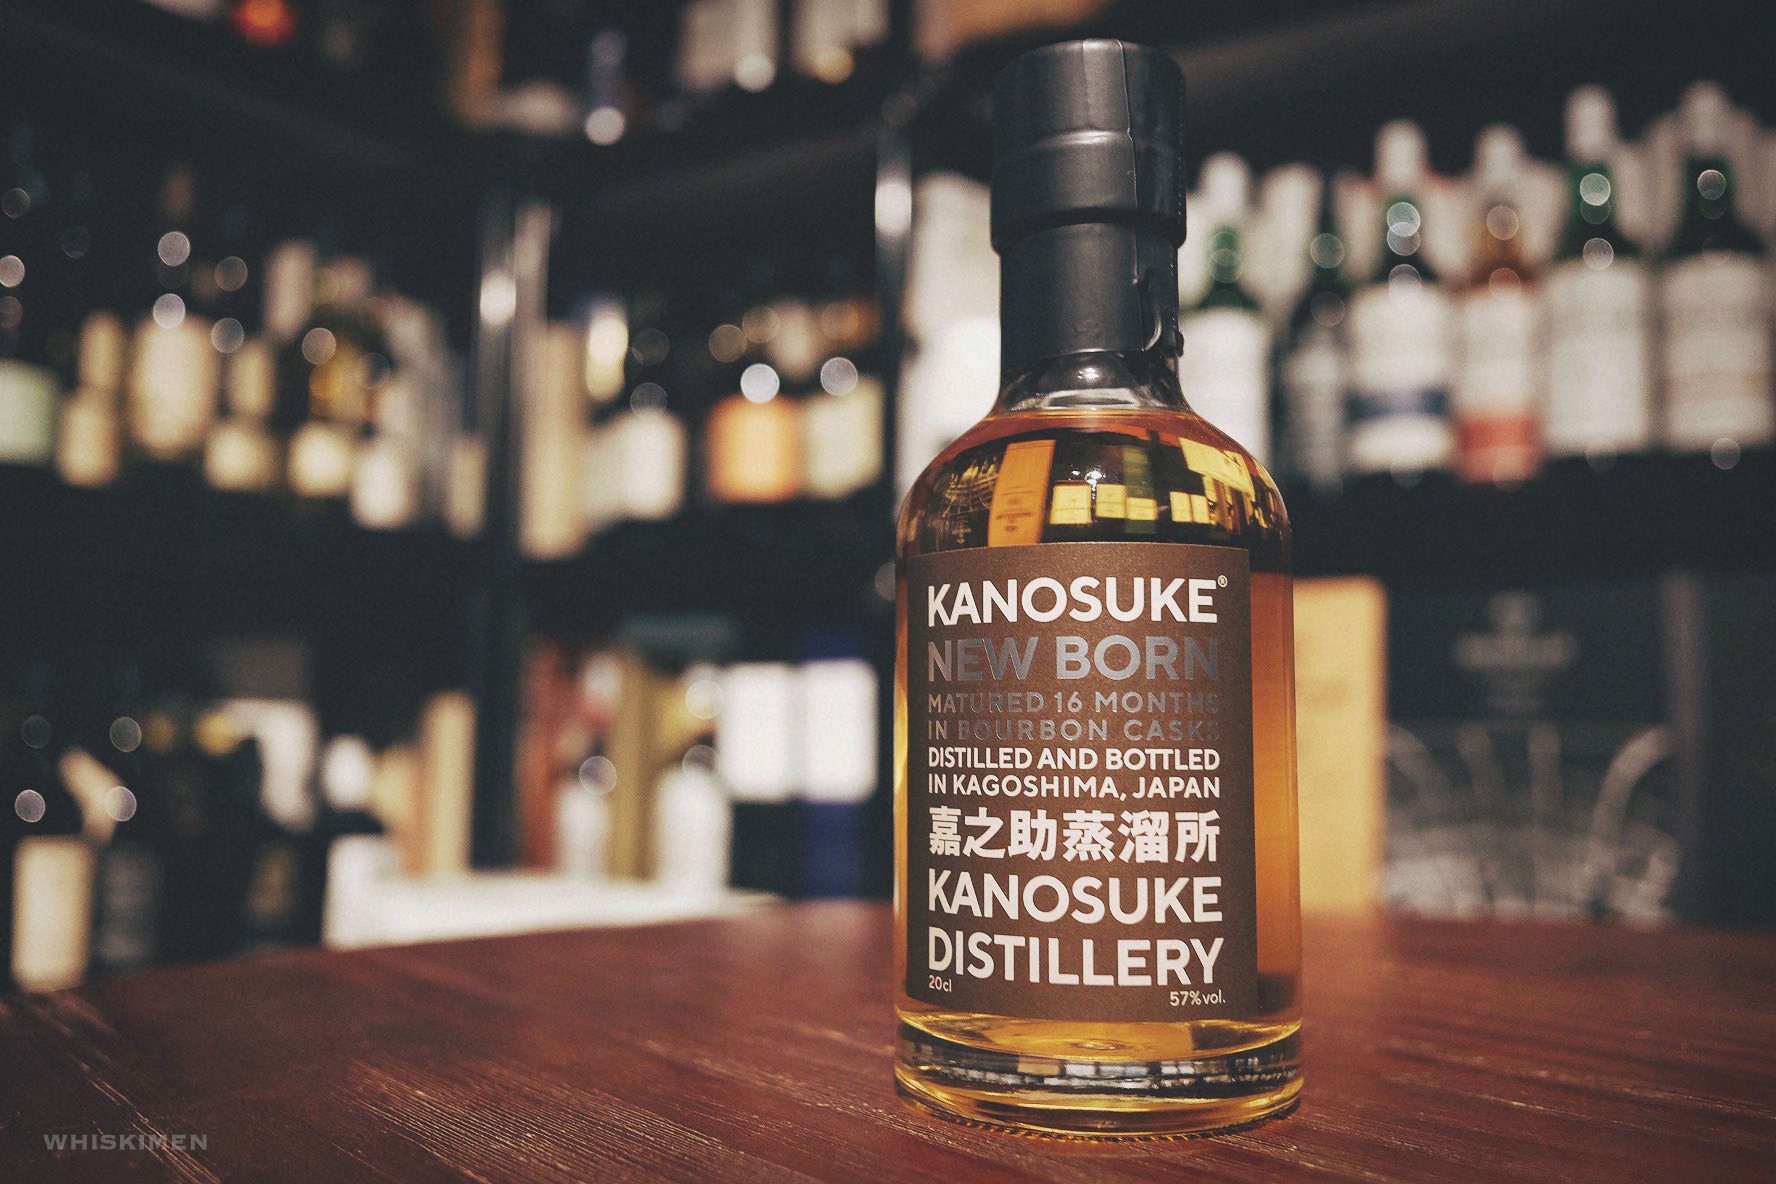 嘉之助 Kanosuke New Born 2019, 日本, 鹿兒島, Japan, Japanese Whisky, single malt whisky, 日本威士忌, 日威, 日本威士忌, Bourbon,